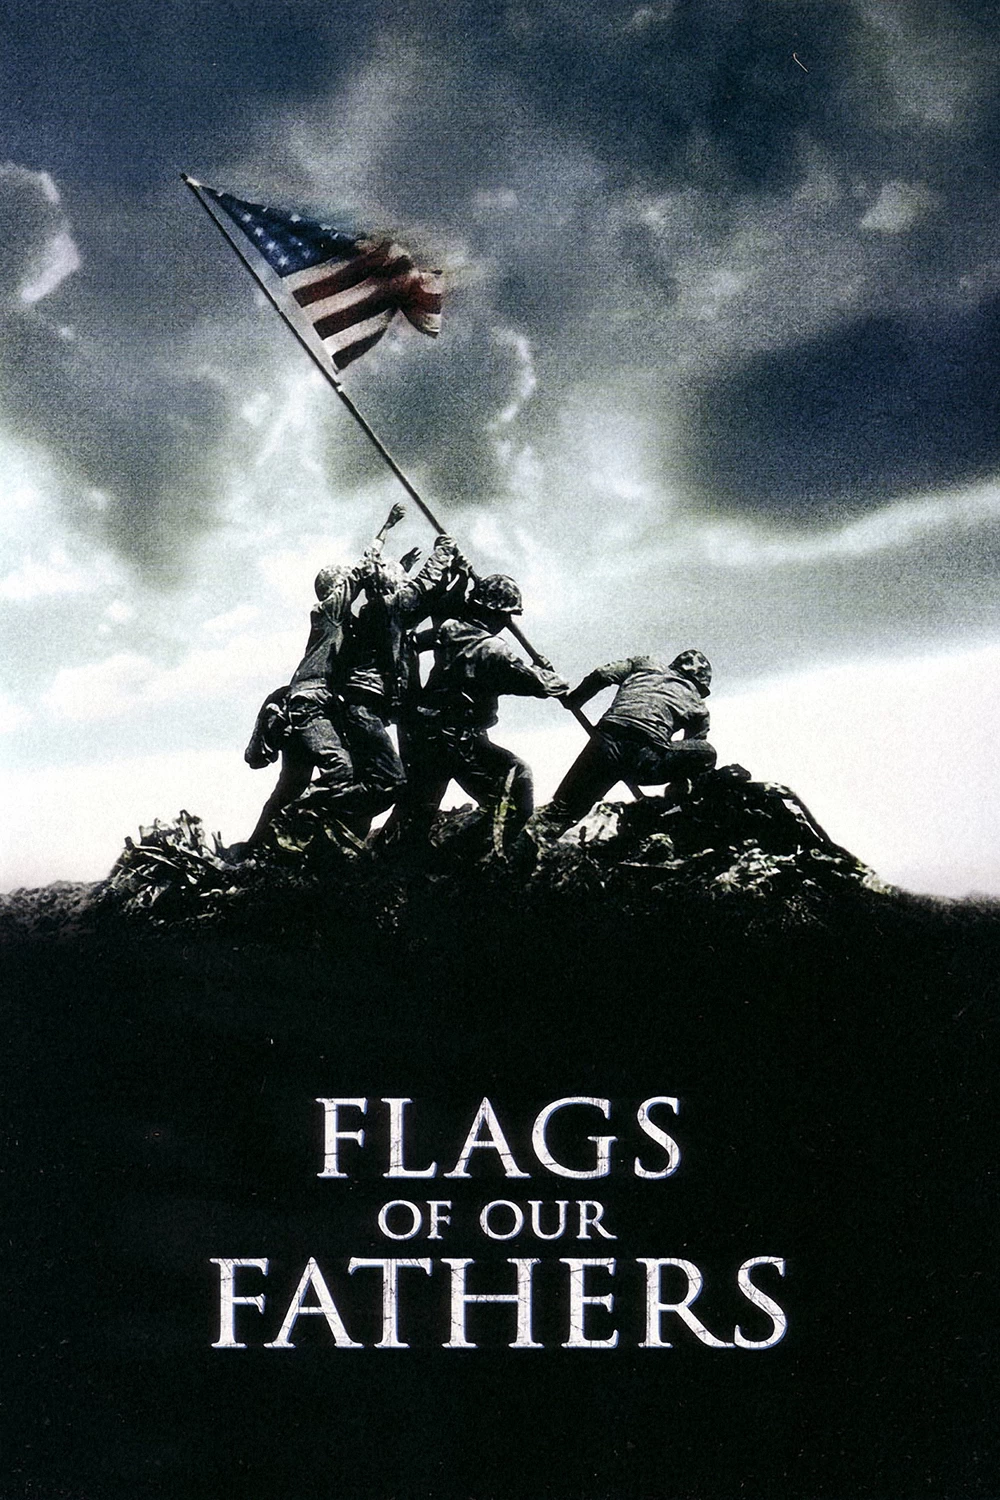 Флаги наших отцов 2006. +Флаги наших отцов - Flags of our fathers (2006). Скотт Иствуд флаги наших отцов. Пол Уокер флаги наших отцов. Флаги наших отцов 2006 Постер.